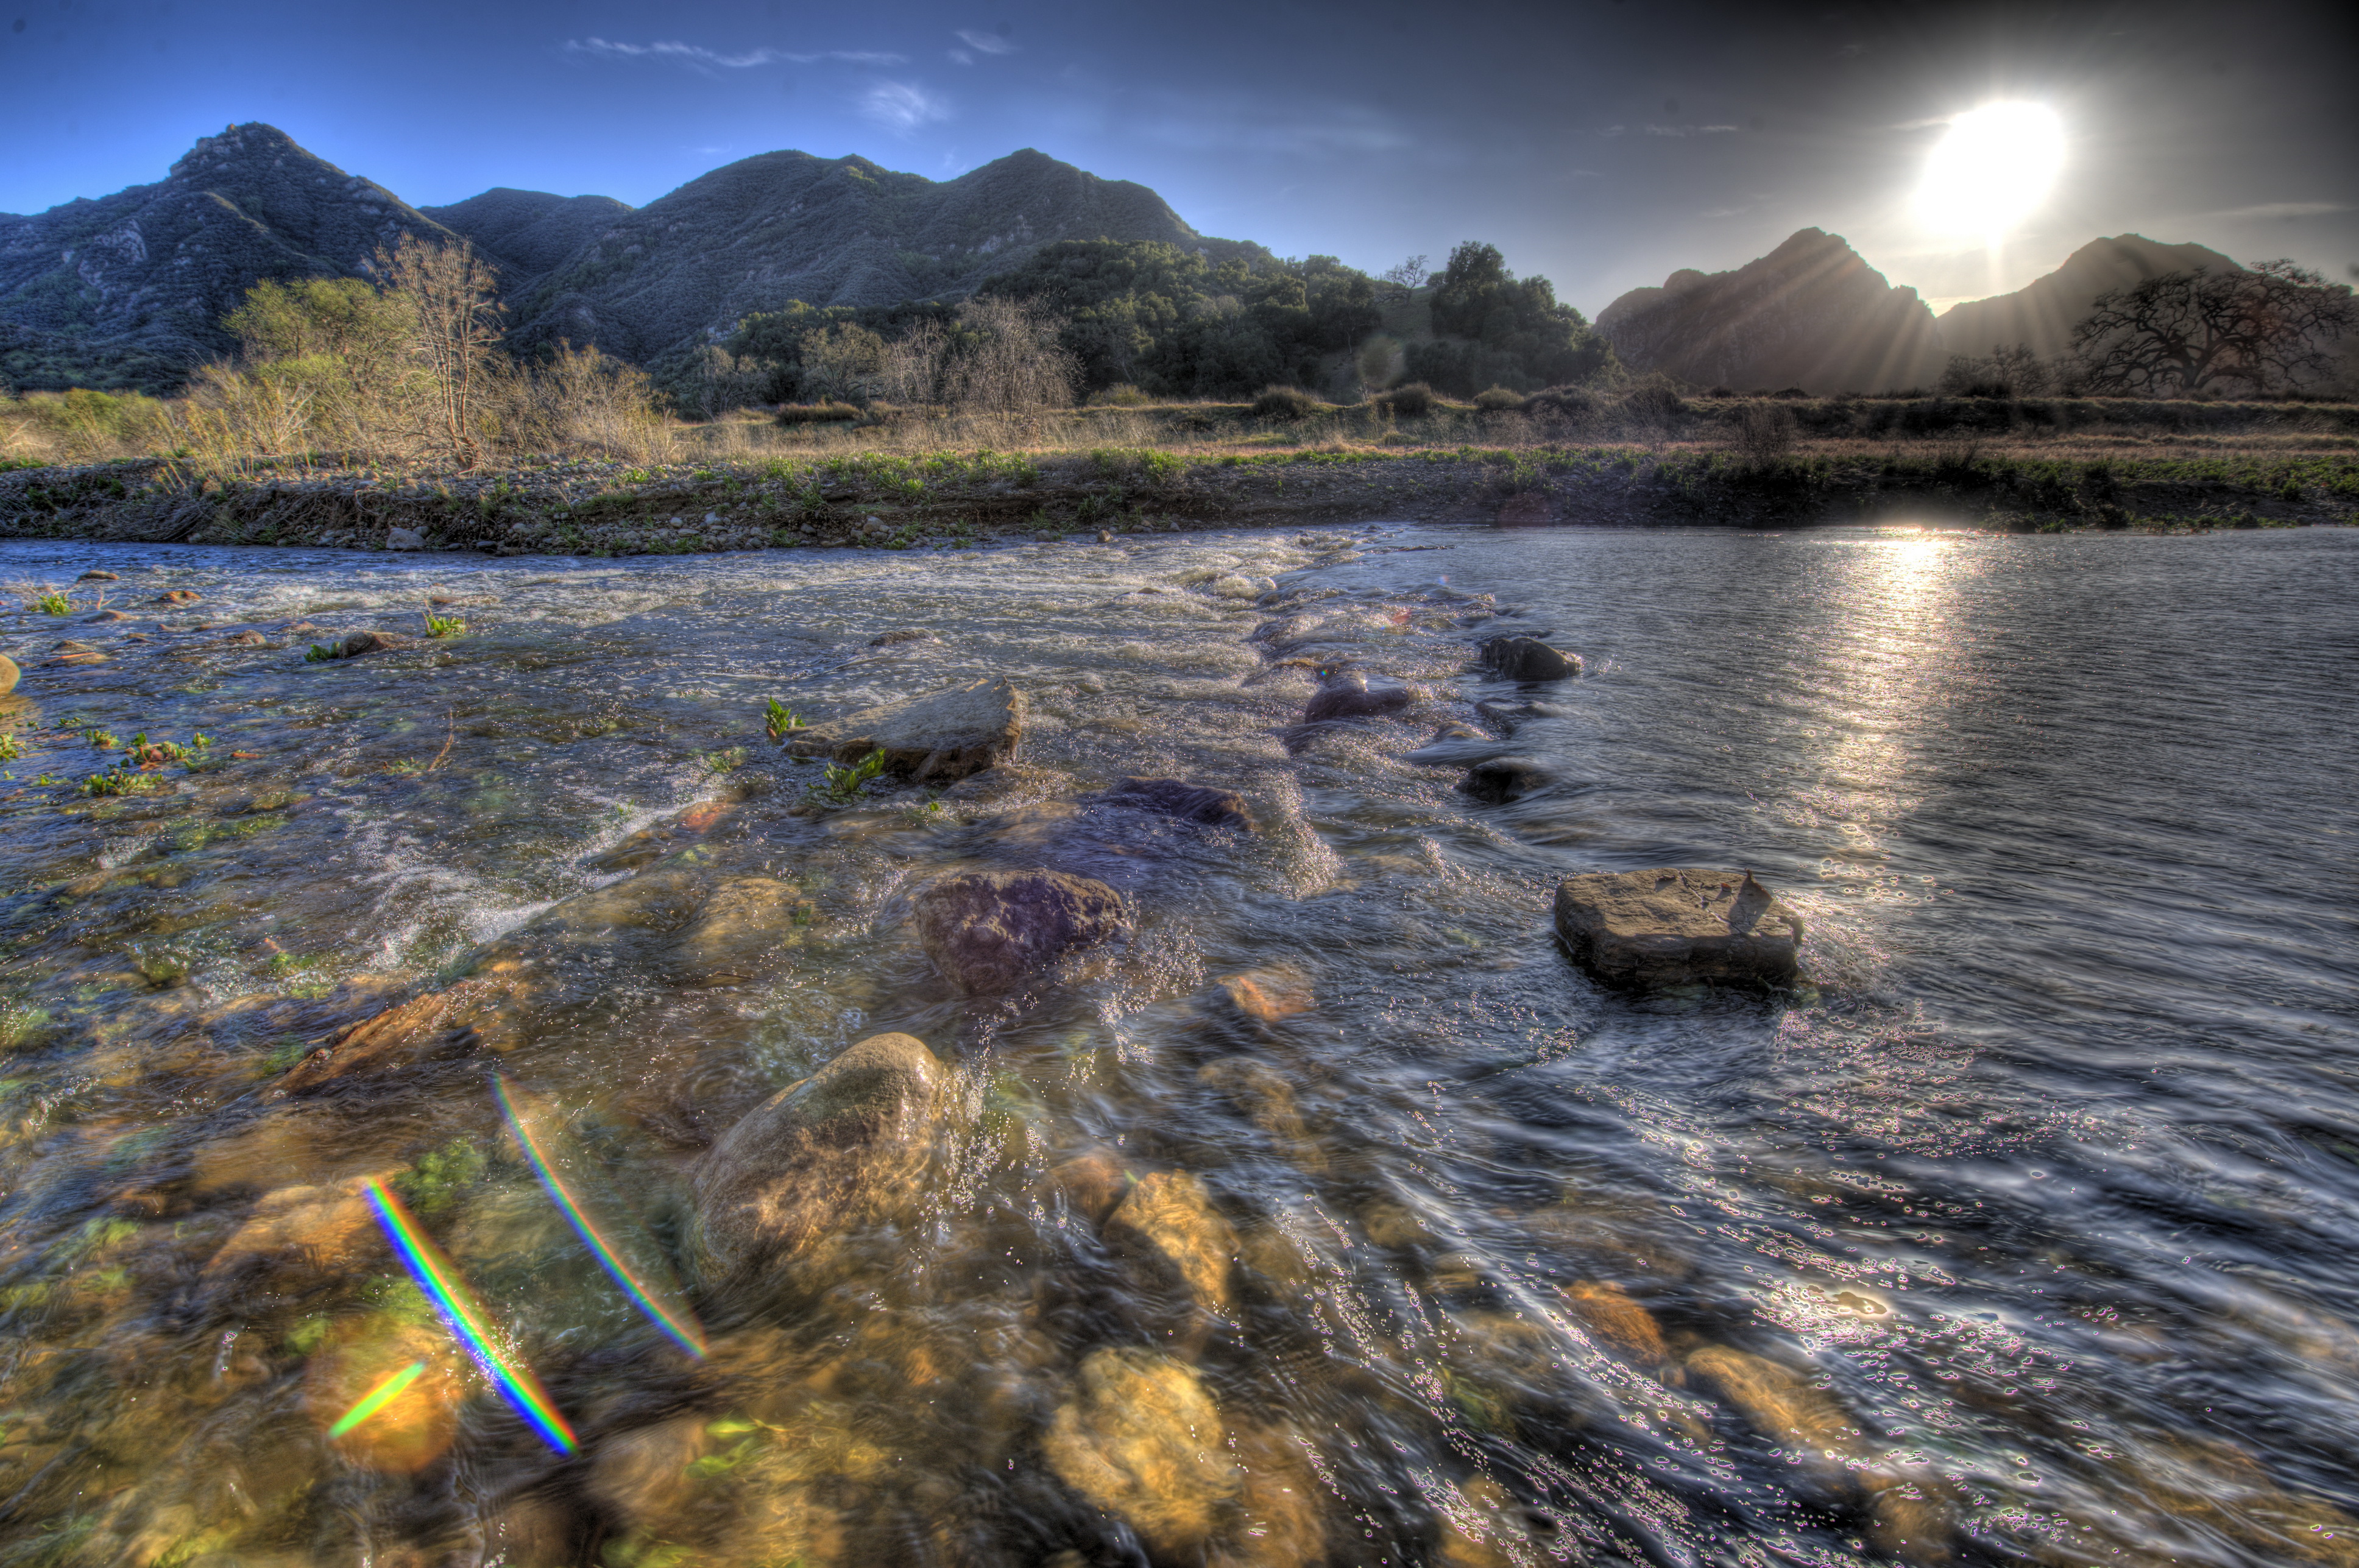 Foton Ljusstrålar Malibu Kalifornien USA HDR Natur flod Stenar amerika Floder